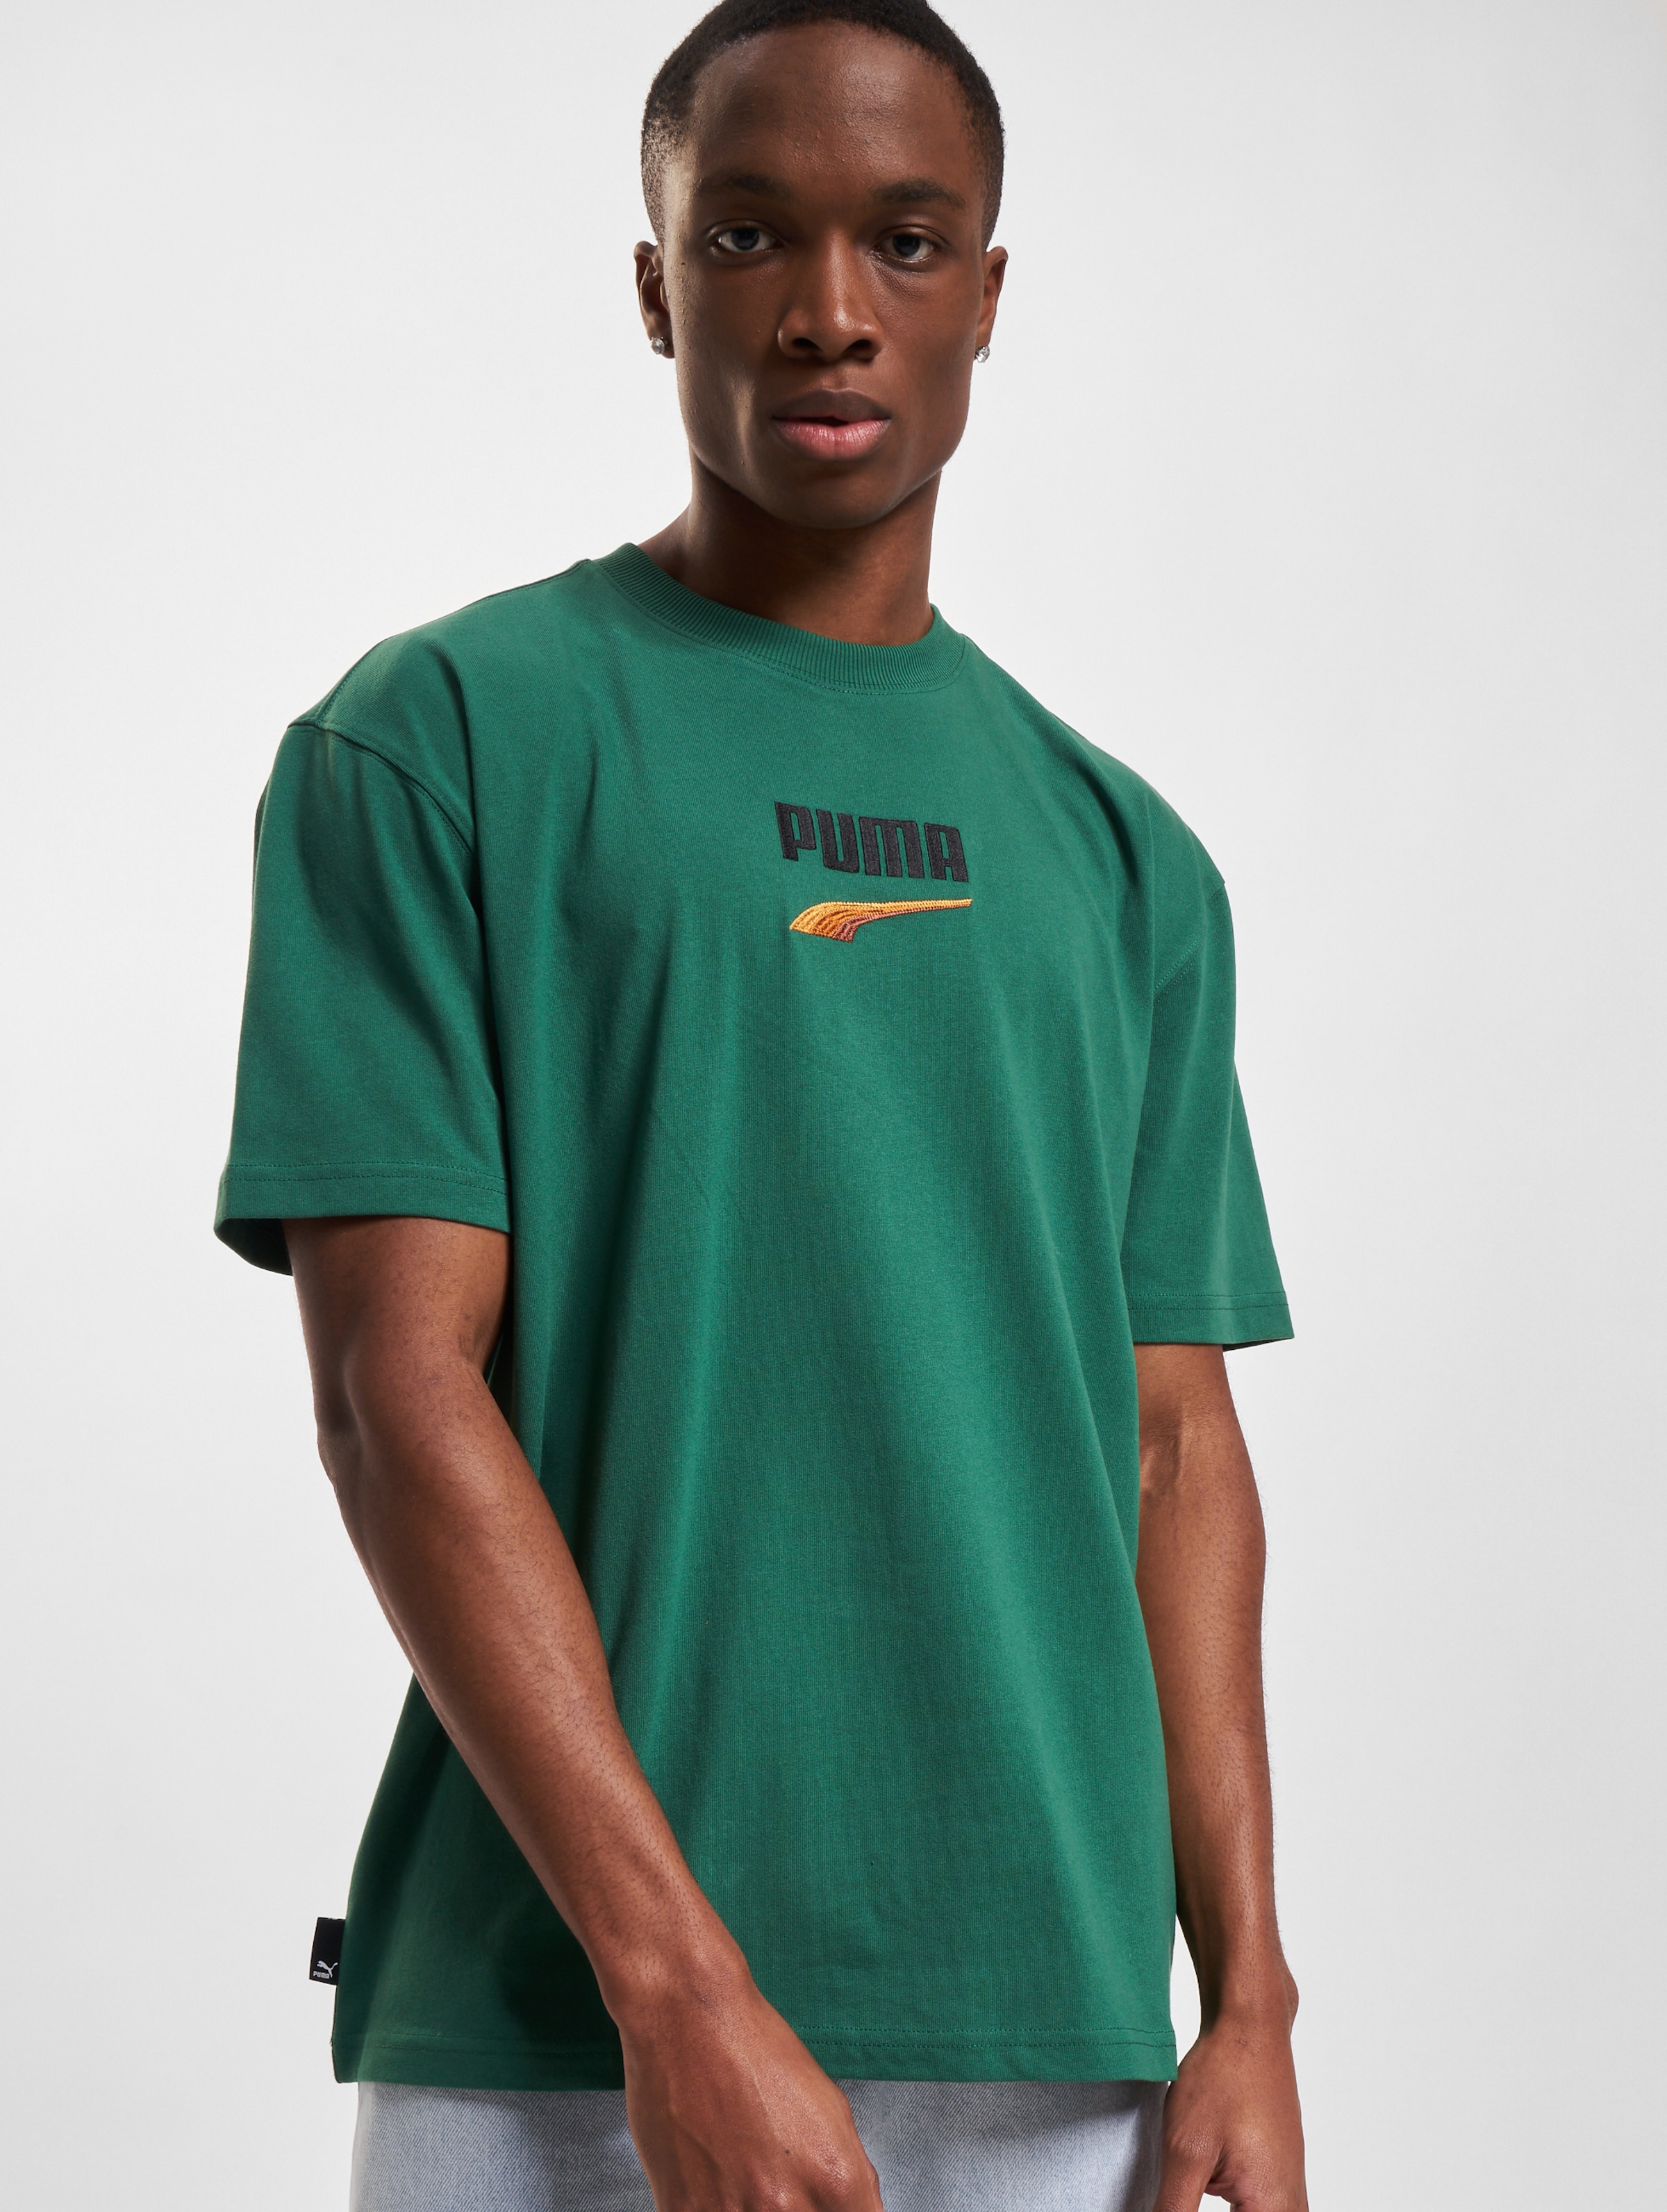 Puma T-Shirt Mannen op kleur groen, Maat L